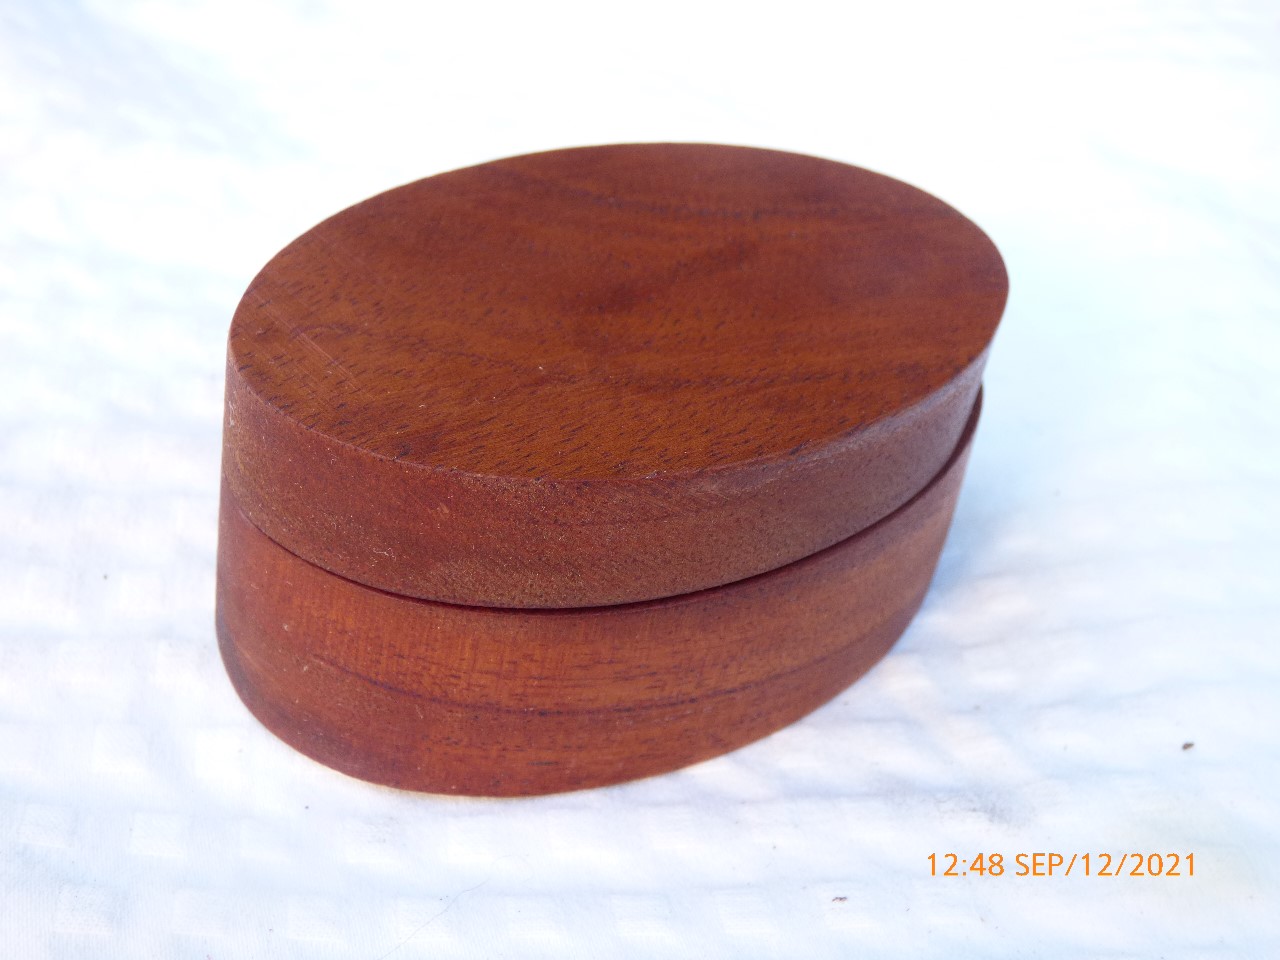 Mahogany oval box carved